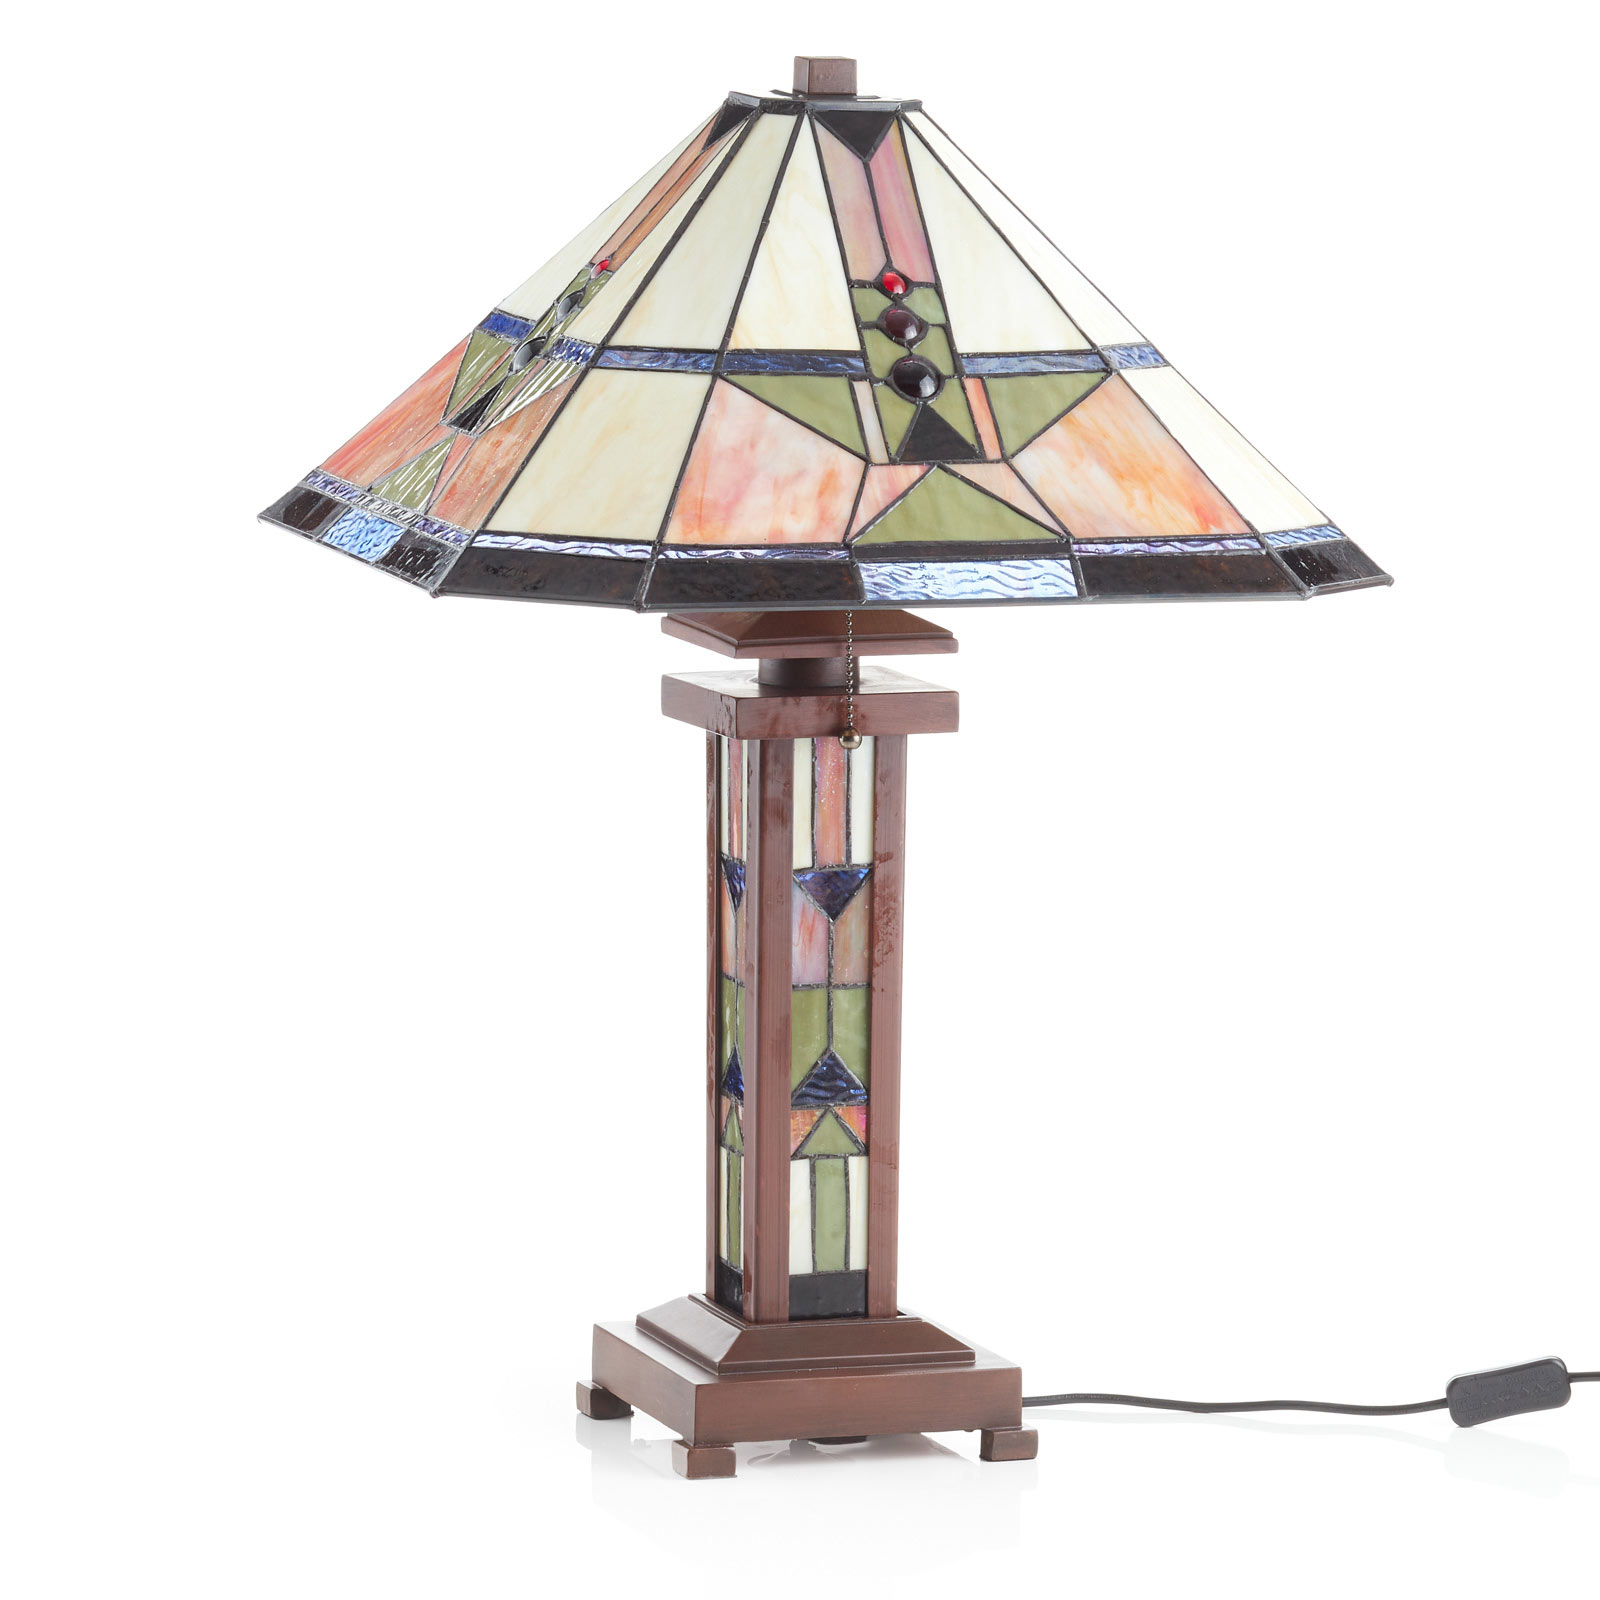 Leondra galda lampa Tiffany stilā